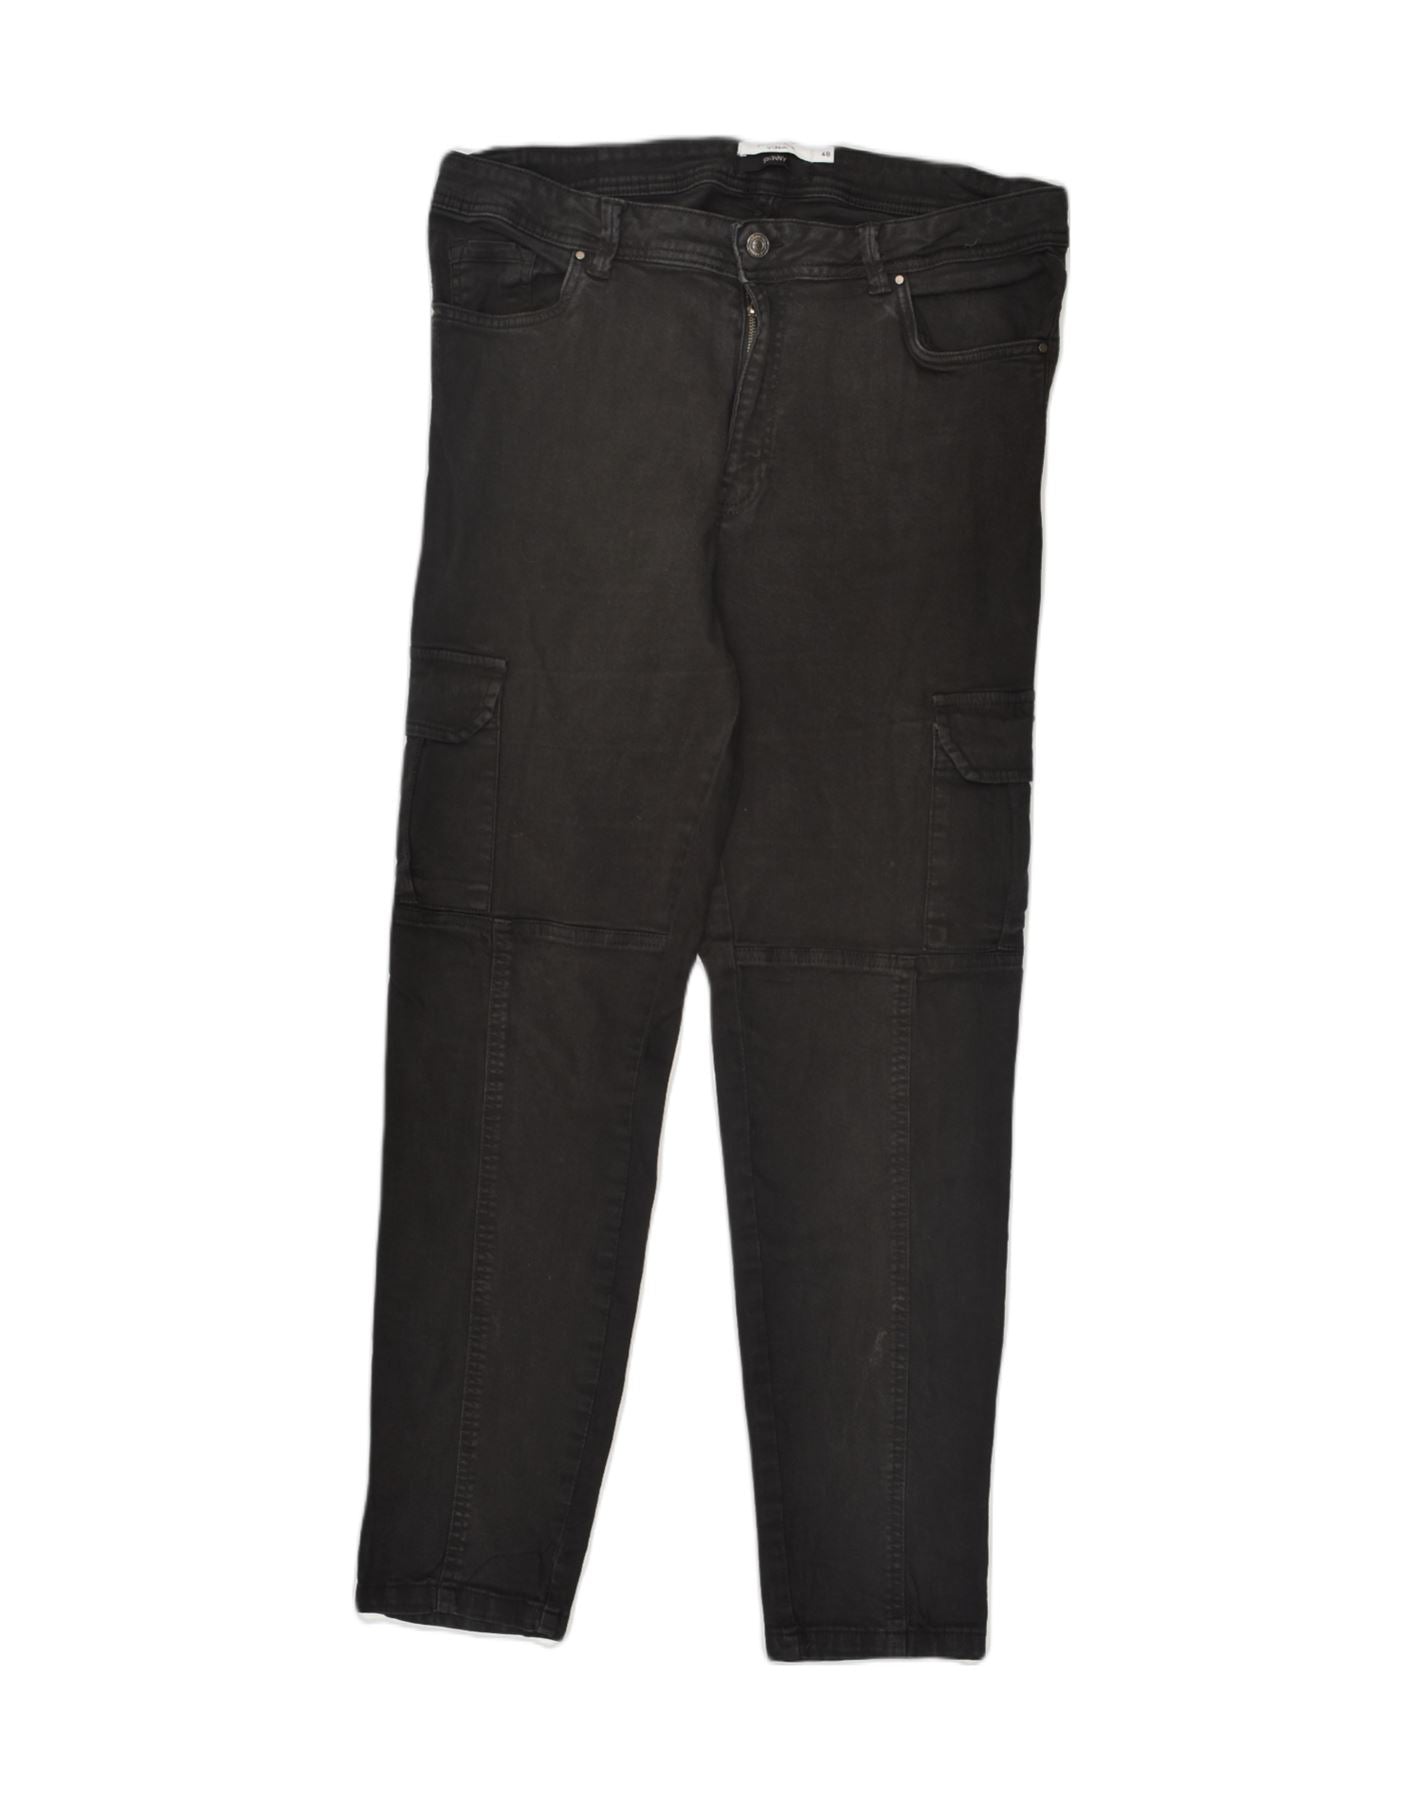 PIAZZA ITALIA Womens Cargo Skinny Jeans IT 48 XL W36 L29 Black